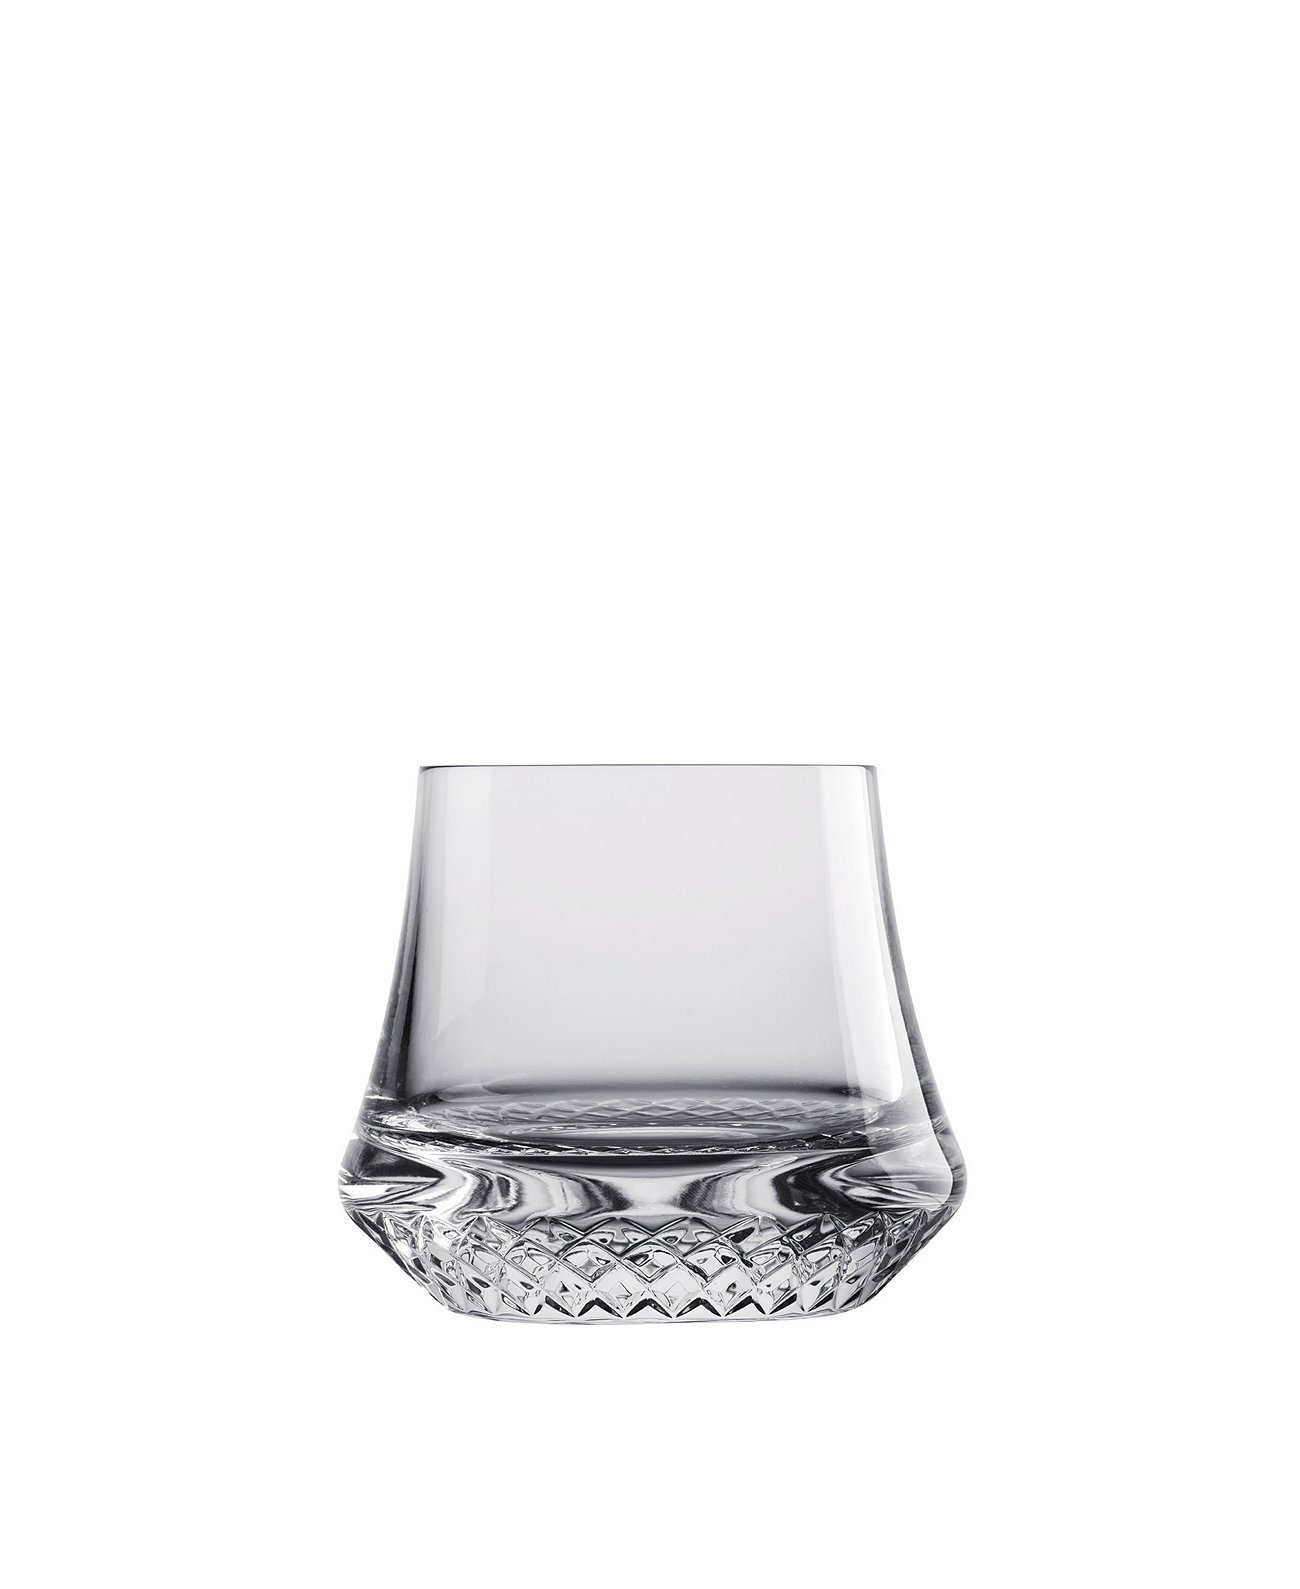 Мягкие стаканы для виски Paris, набор из 2 шт. Nude Glass